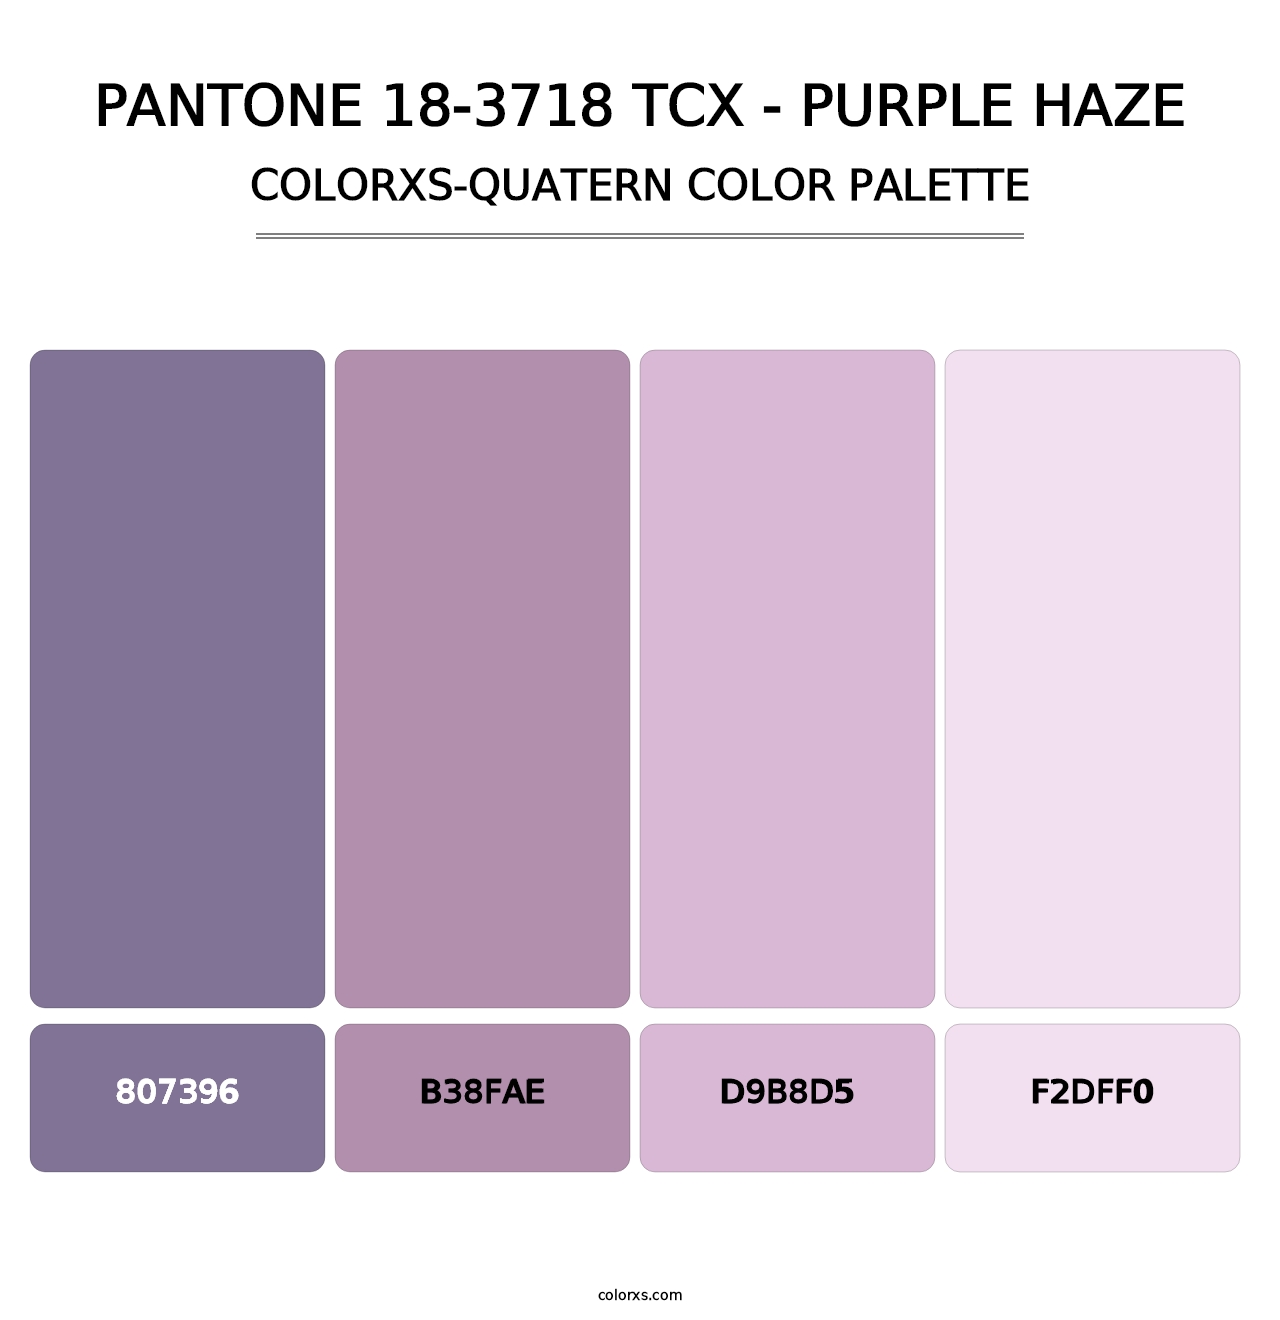 PANTONE 18-3718 TCX - Purple Haze - Colorxs Quatern Palette